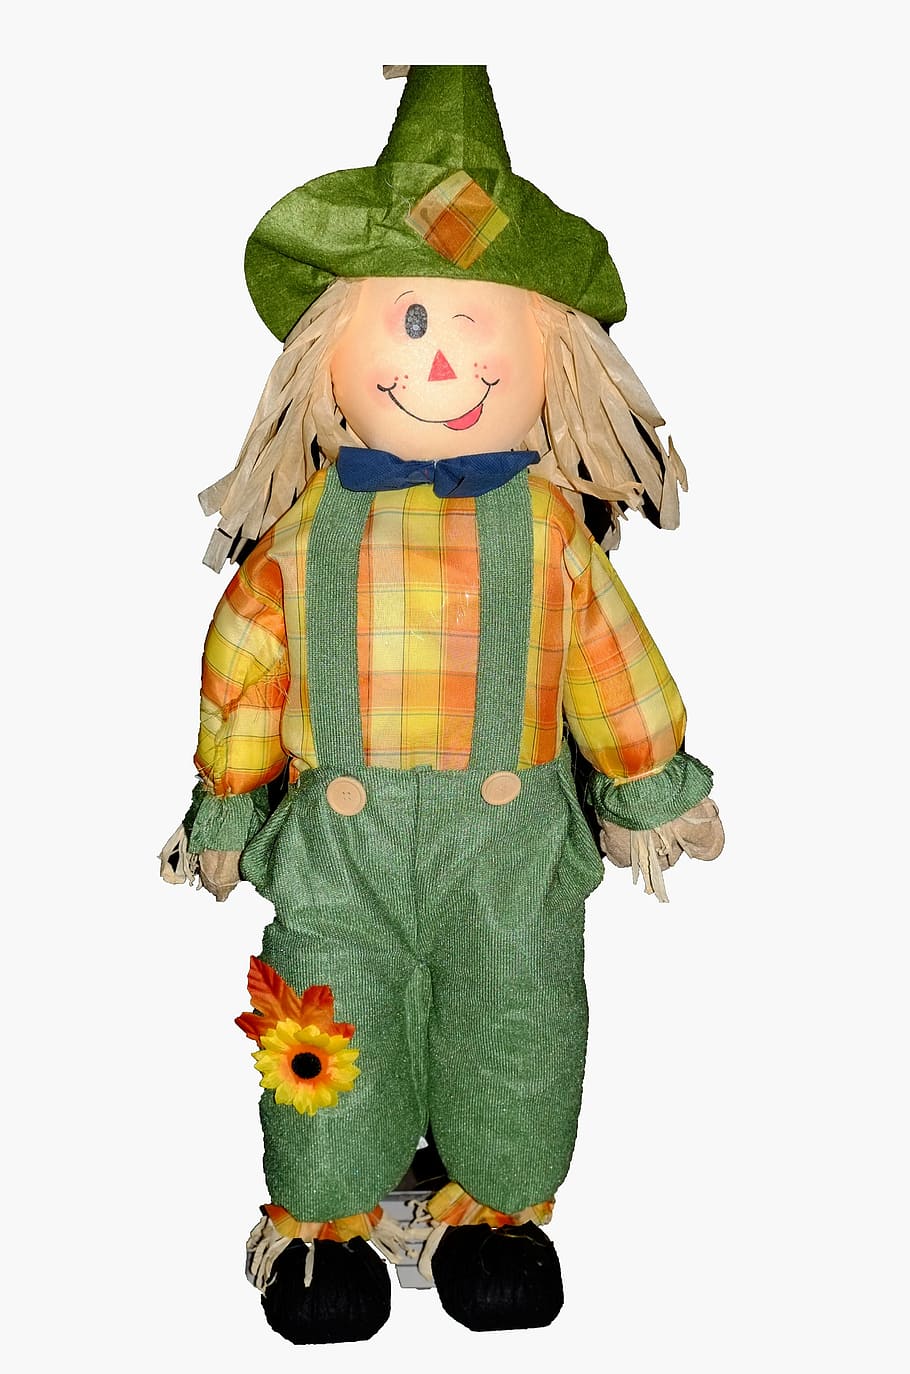 scarecrow, doll, harvest, boy, autumn, decor, ornamental, white background, studio shot, representation